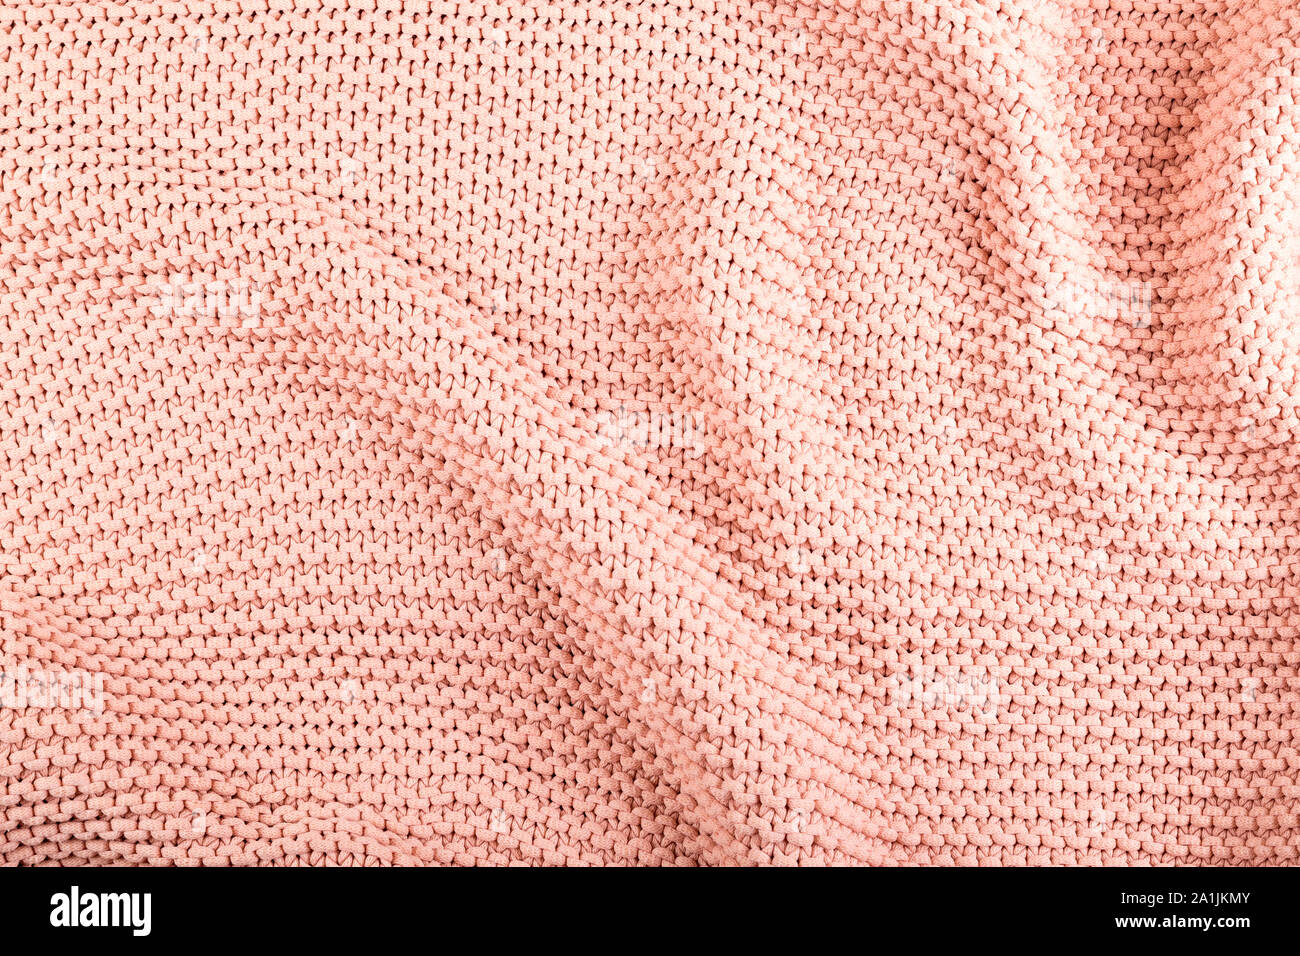 Morbido e confortevole in maglia pesante coltre, pullover, maglione. Struttura di cotone tessuto a maglia/materiale. Come sfondo per il tema della moda, della maglieria ecc. Foto Stock